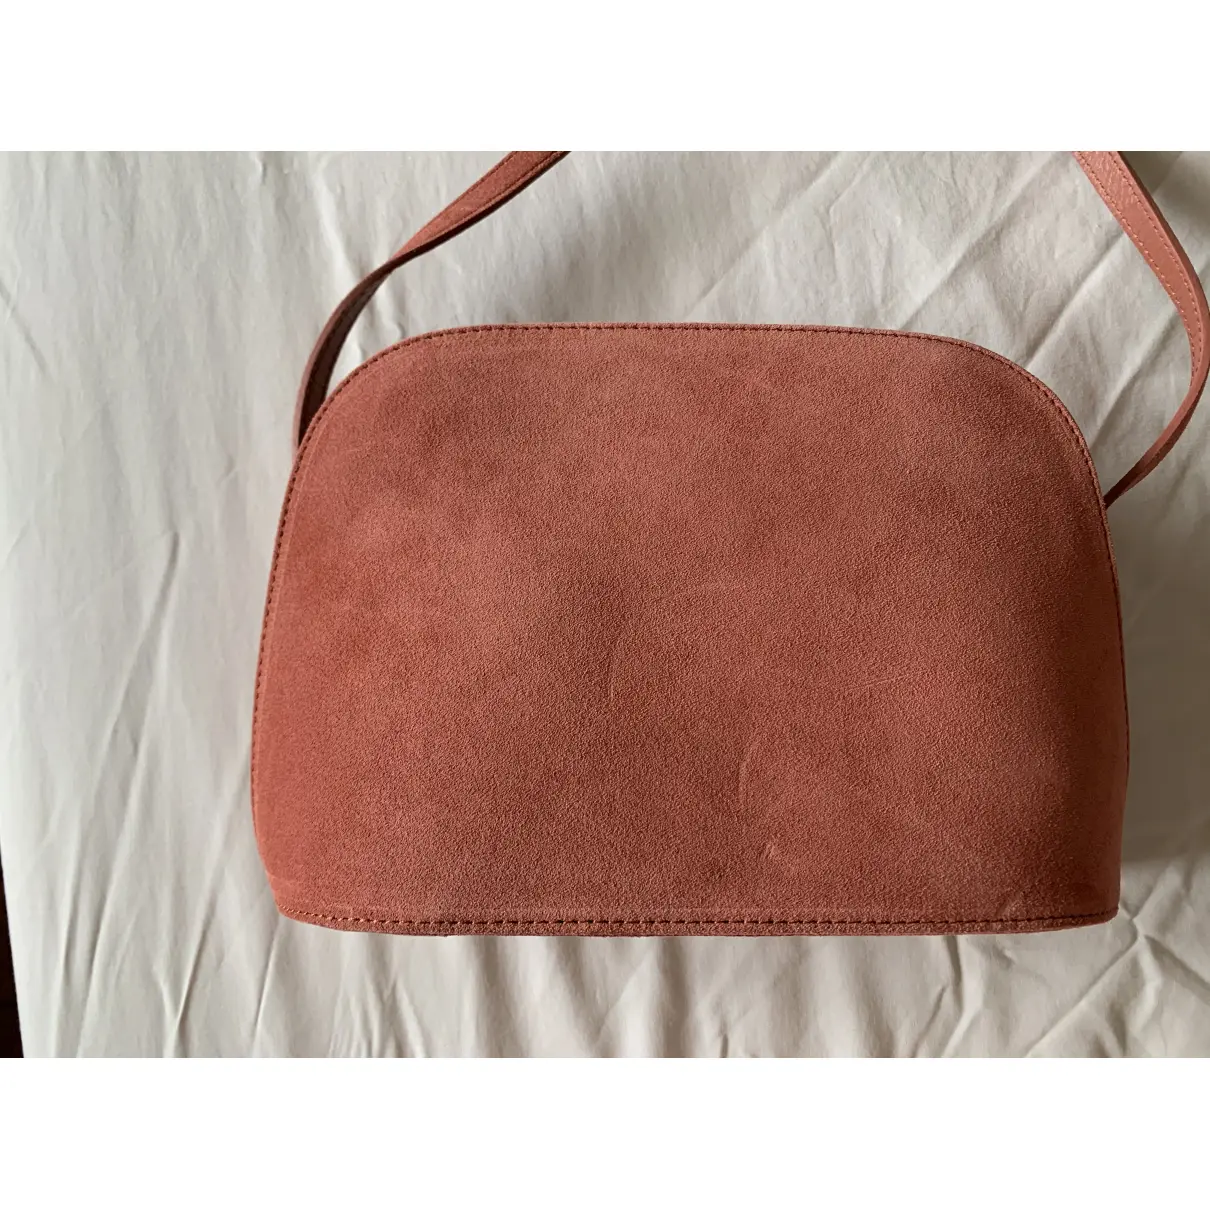 Buy Sézane Victor handbag online